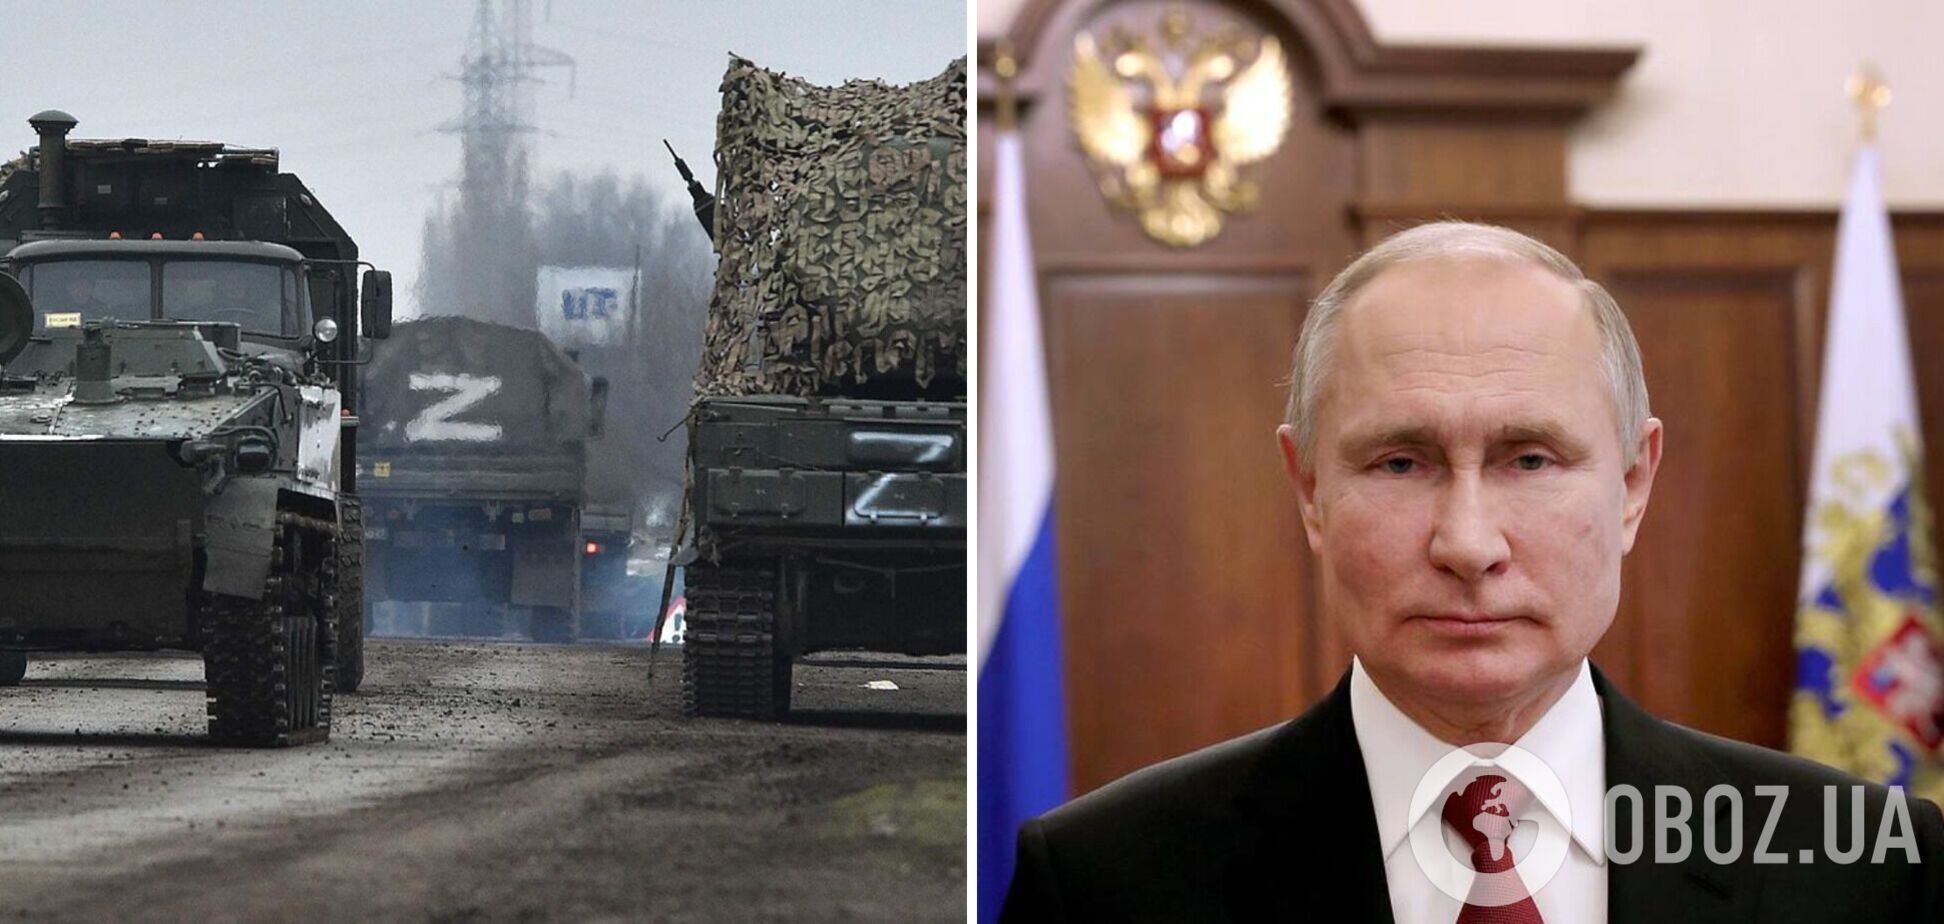  РосЗМІ заявили, що Путін готує звернення до росіян щодо війни: Пєсков спростував